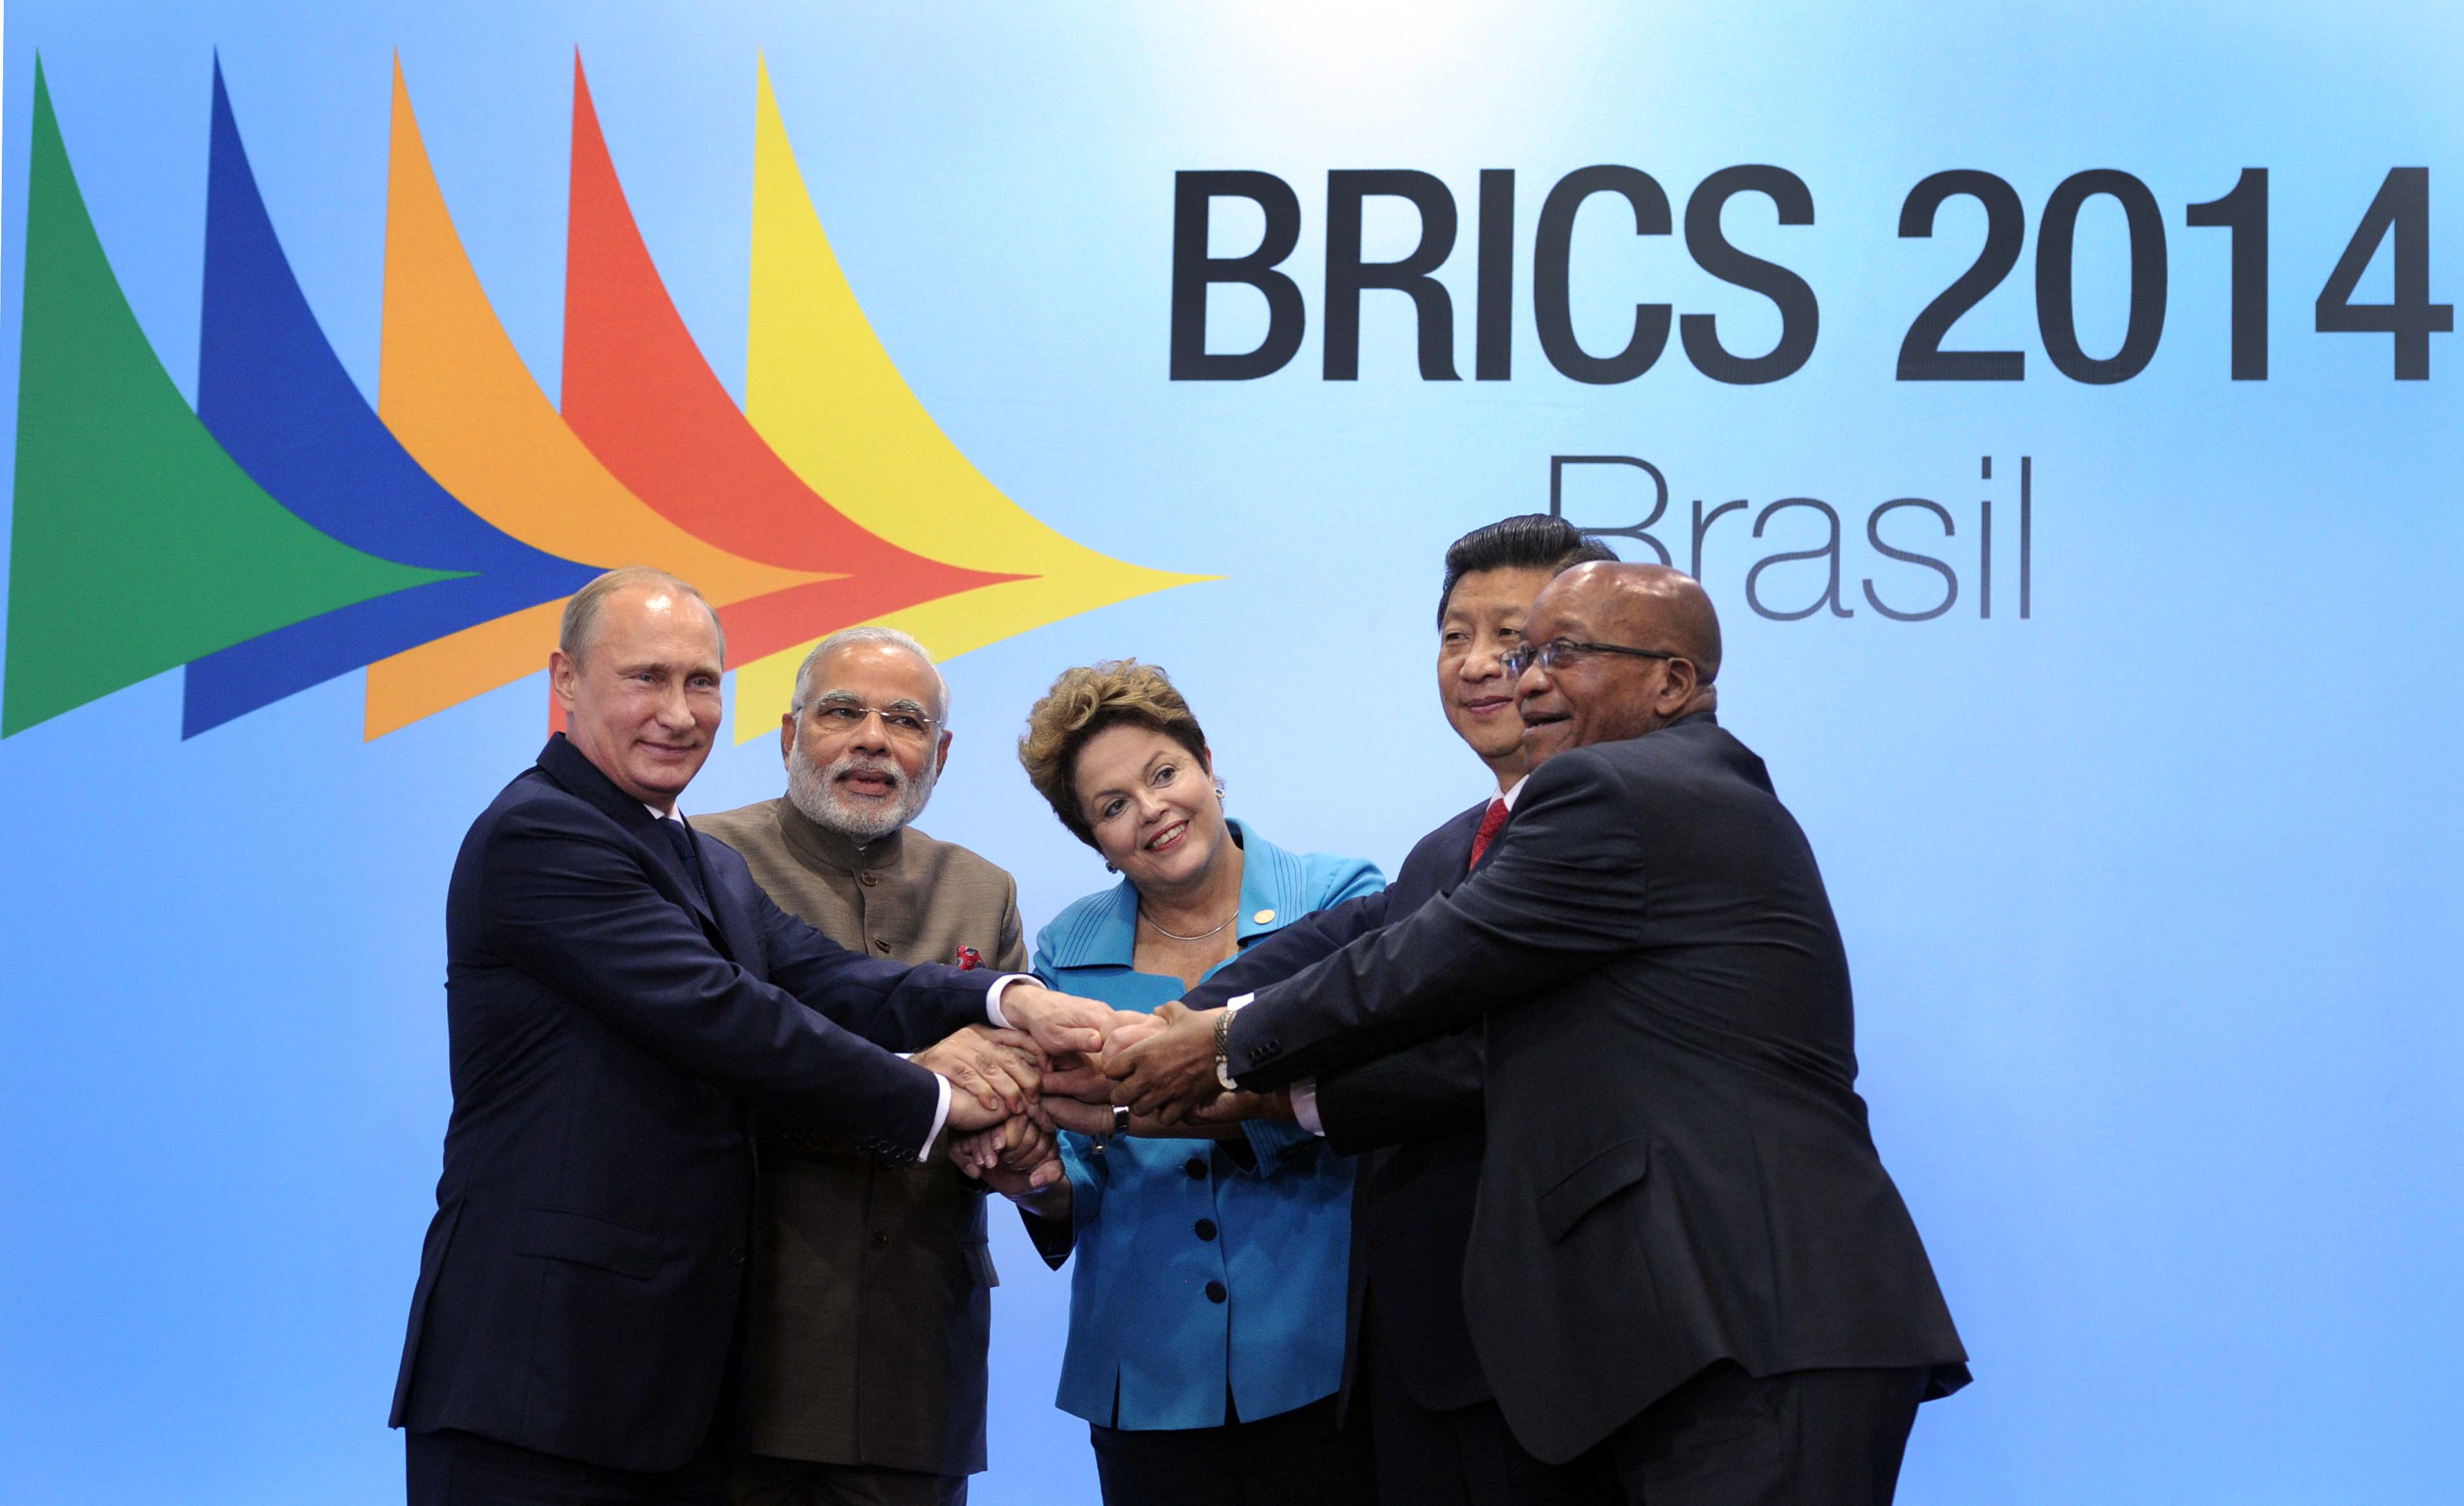 BRICS : Les partenaires junior de l'impérialisme | L'Anticapitaliste